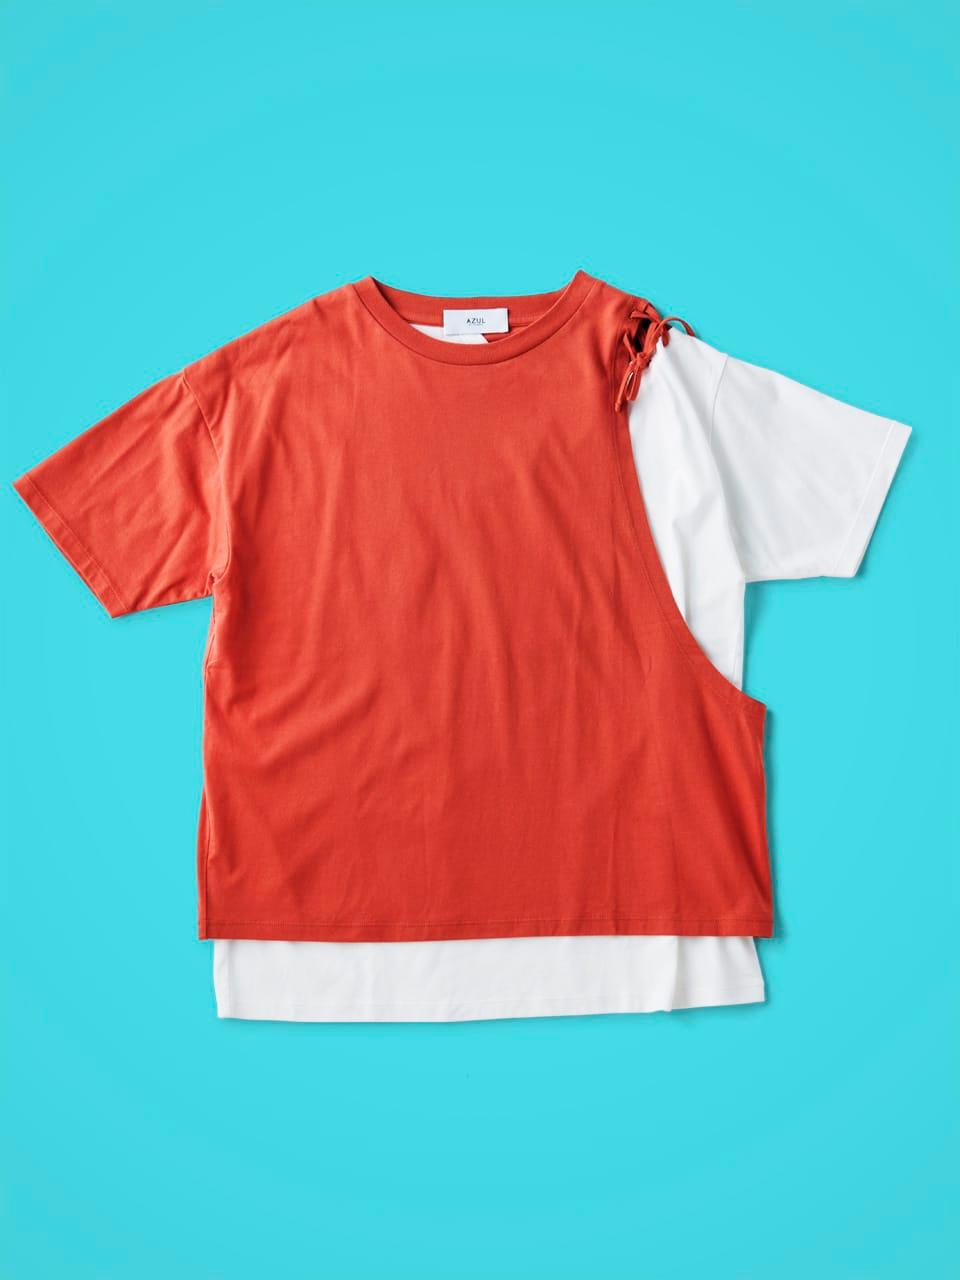 ネットで買える、最旬Tシャツ85。一枚に異なる要素が混ざり合う進化系【ハイブリッド編】 - Slide:4